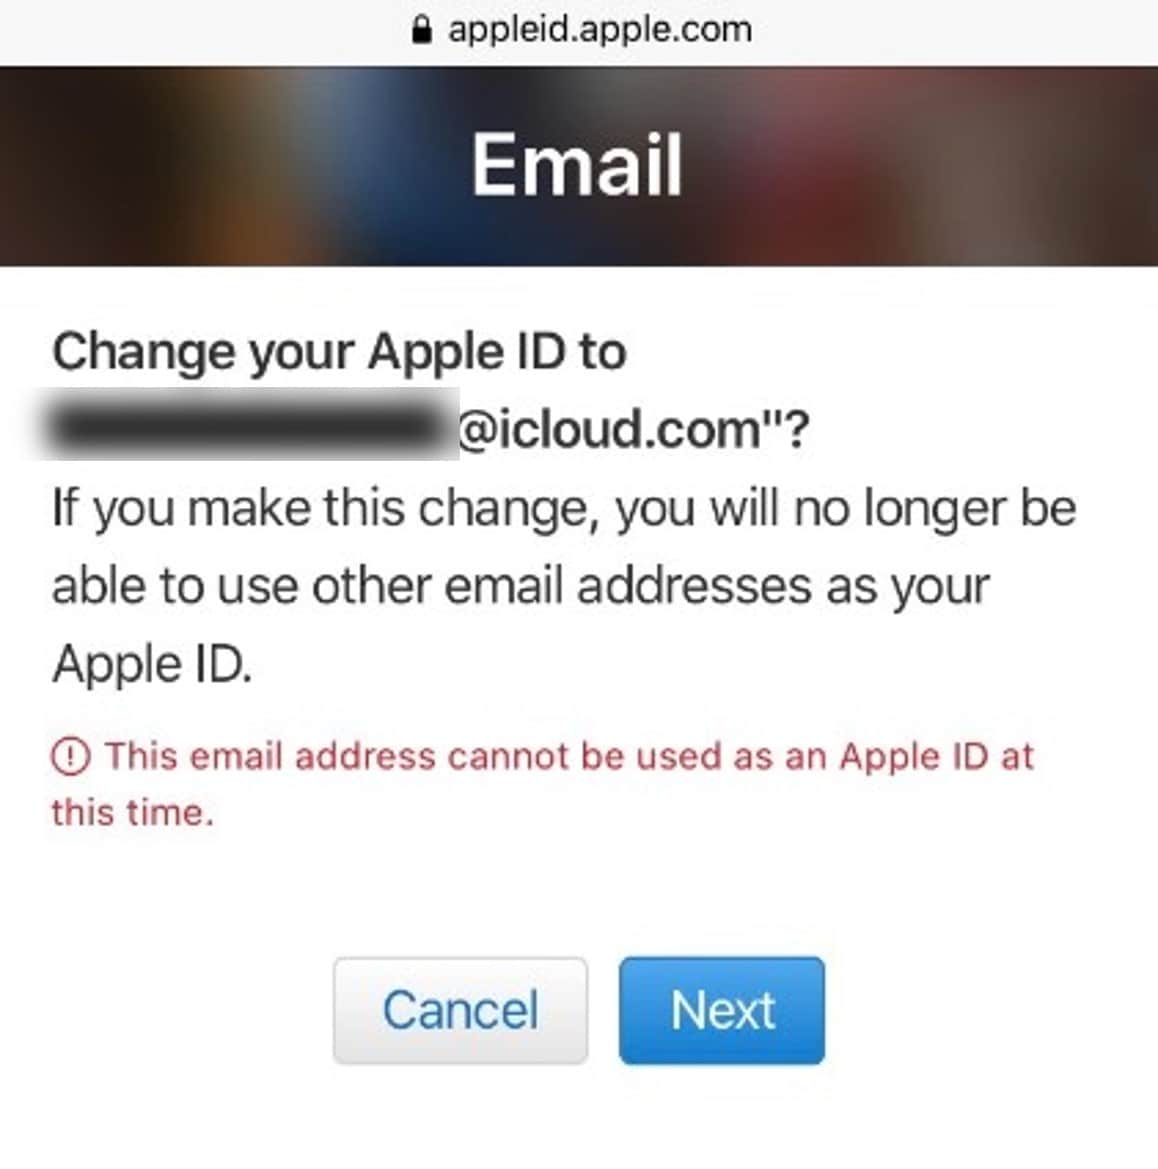 Altere o ID Apple para o e-mail iCloud